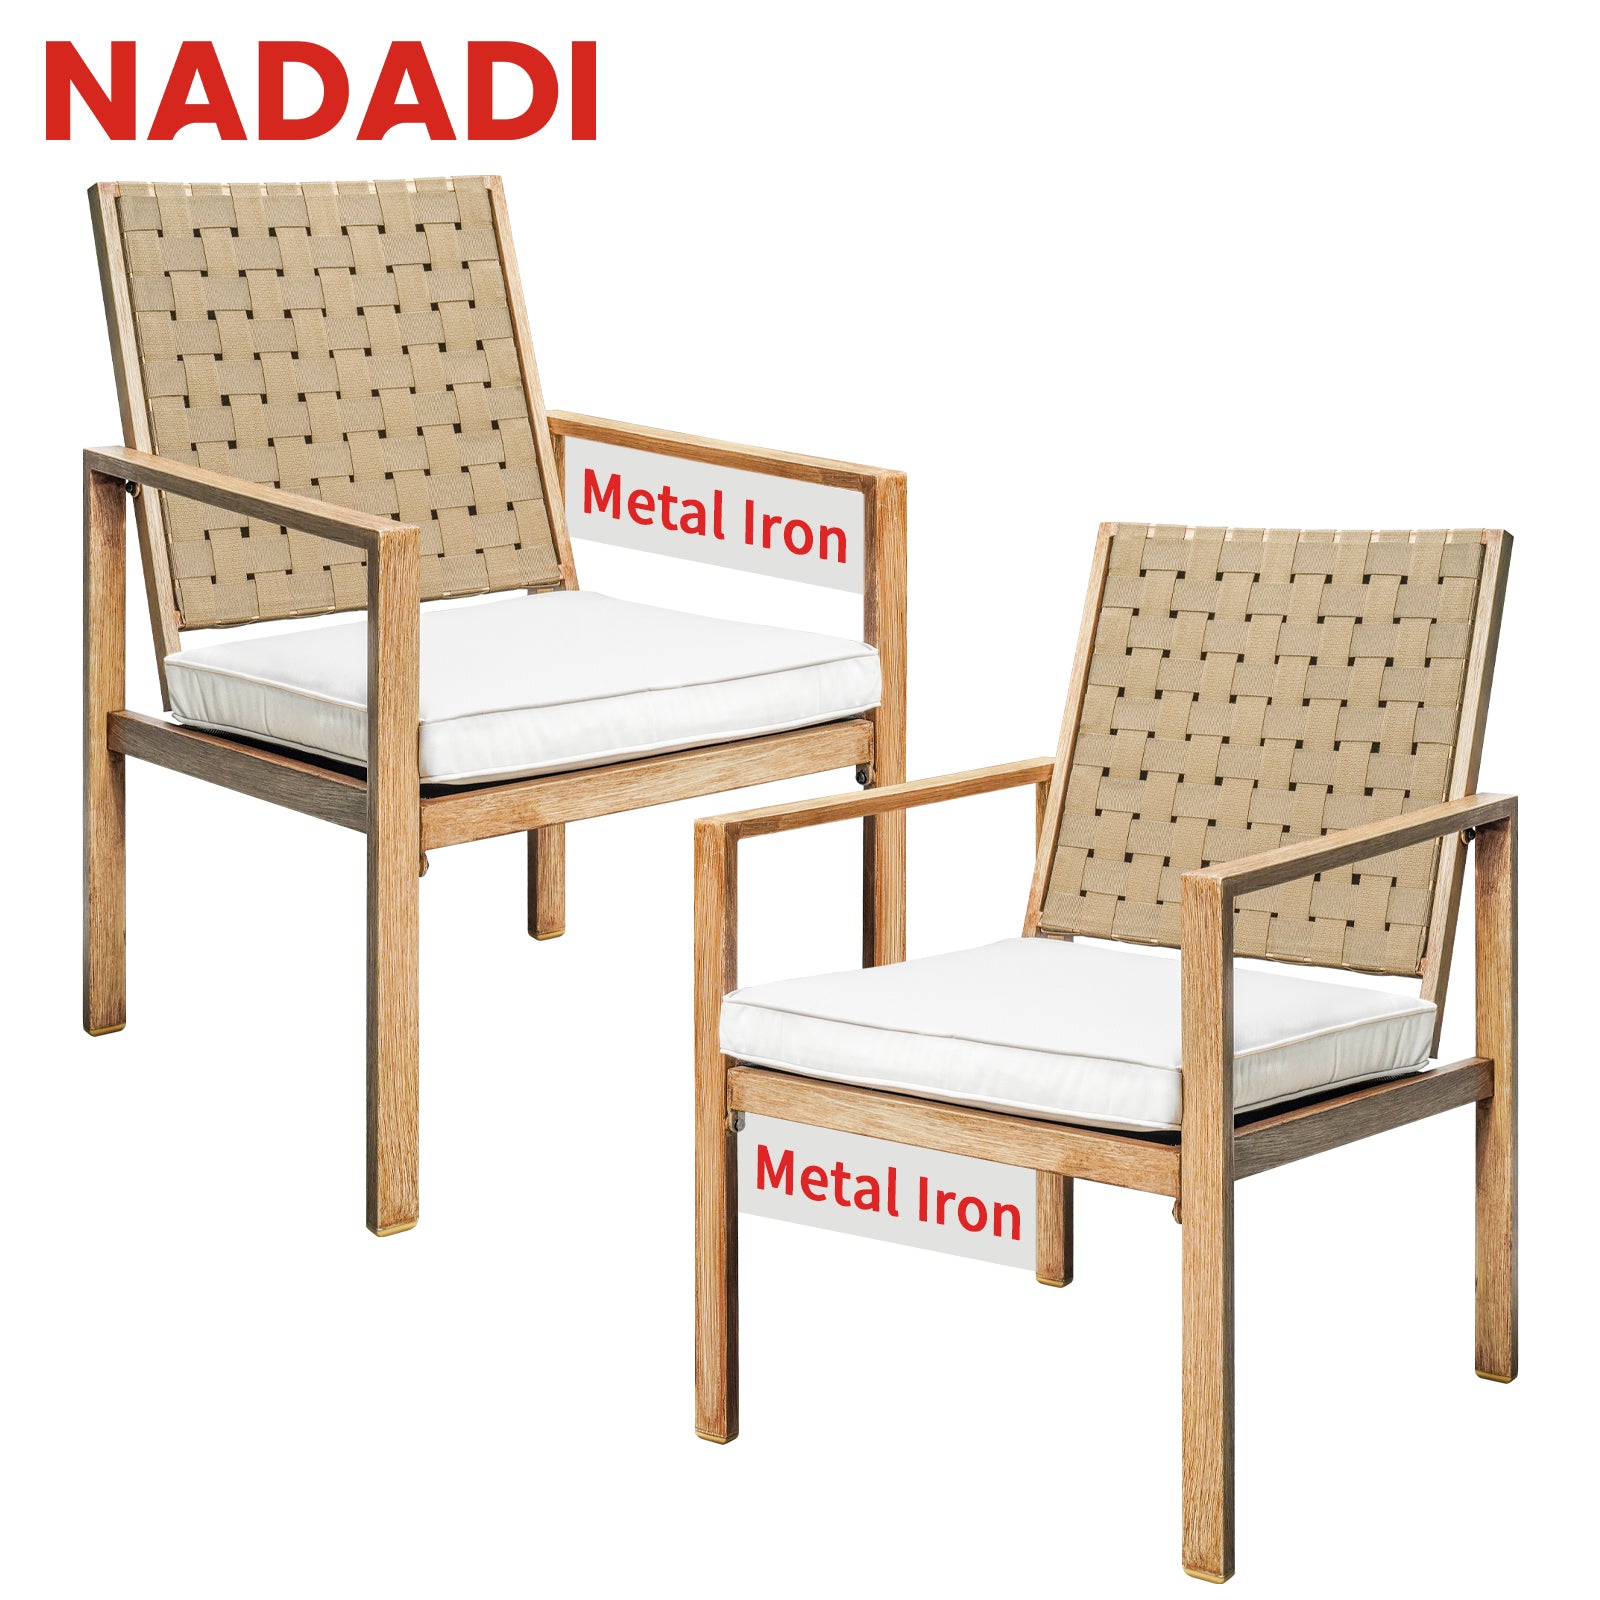 NADADI-Drawstring-Patio-Chairs-2A-Product-drawing